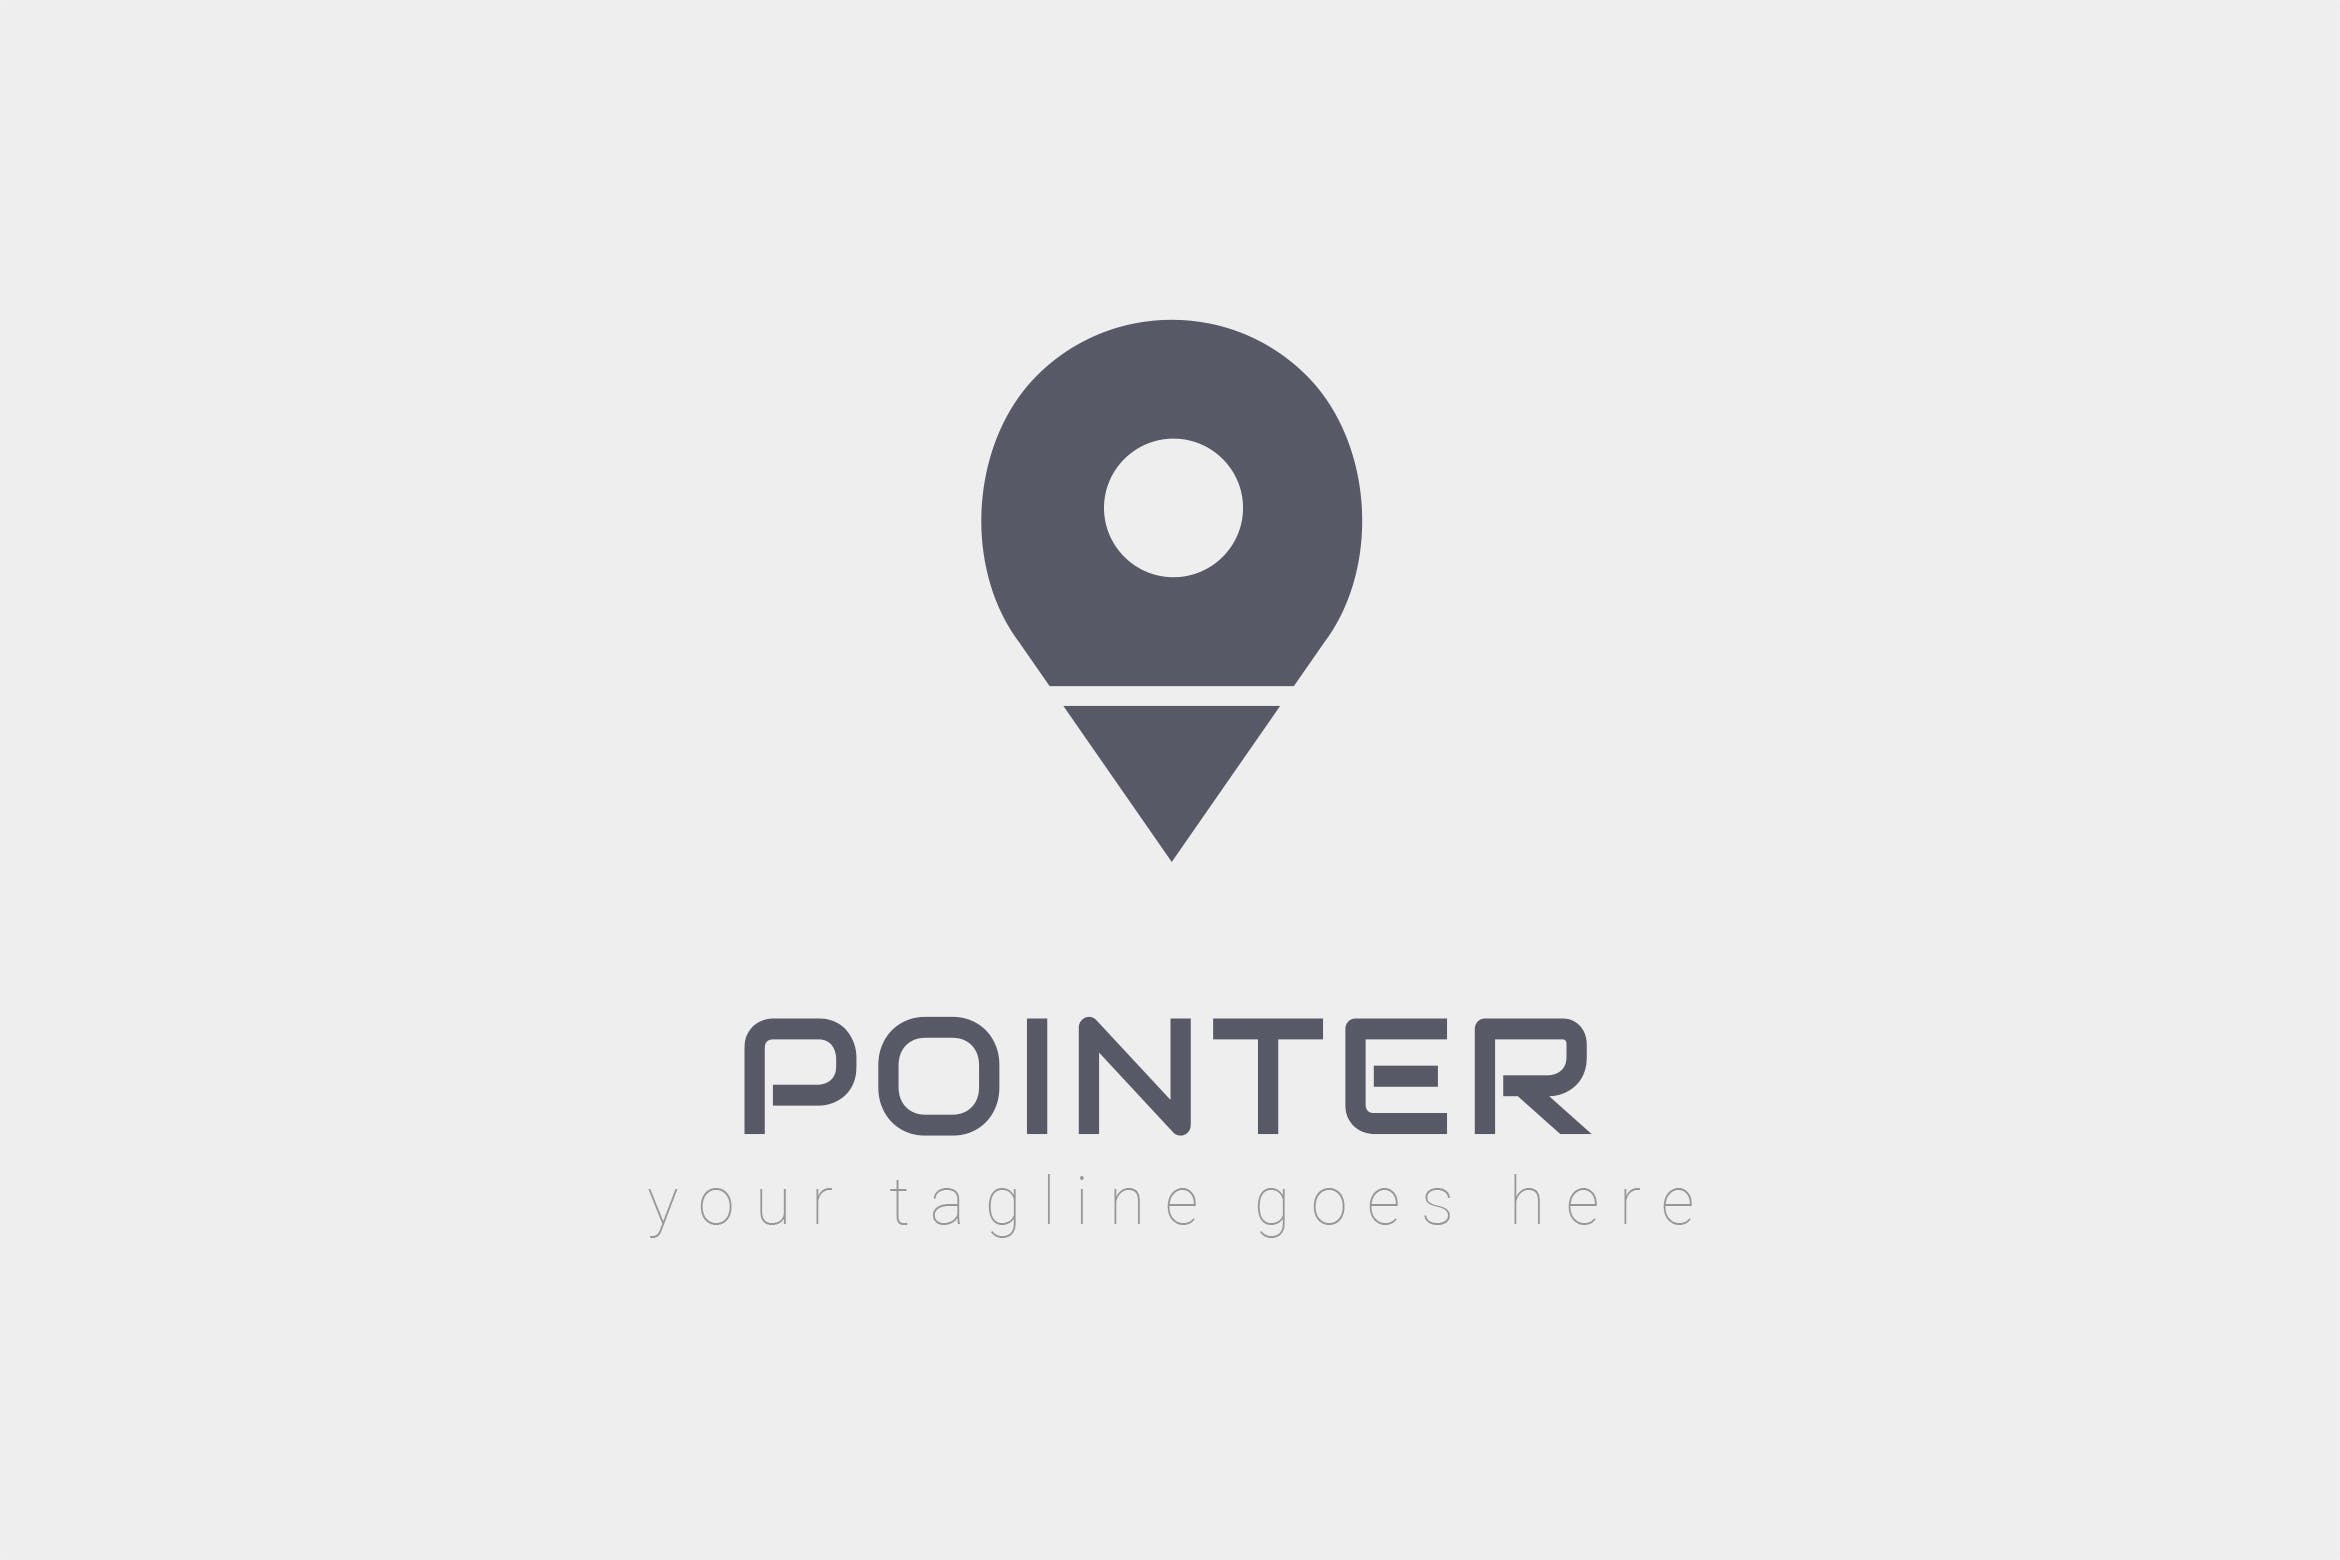 旅游/地图品牌Logo设计非凡图库精选模板 Pointer – Logo Design插图